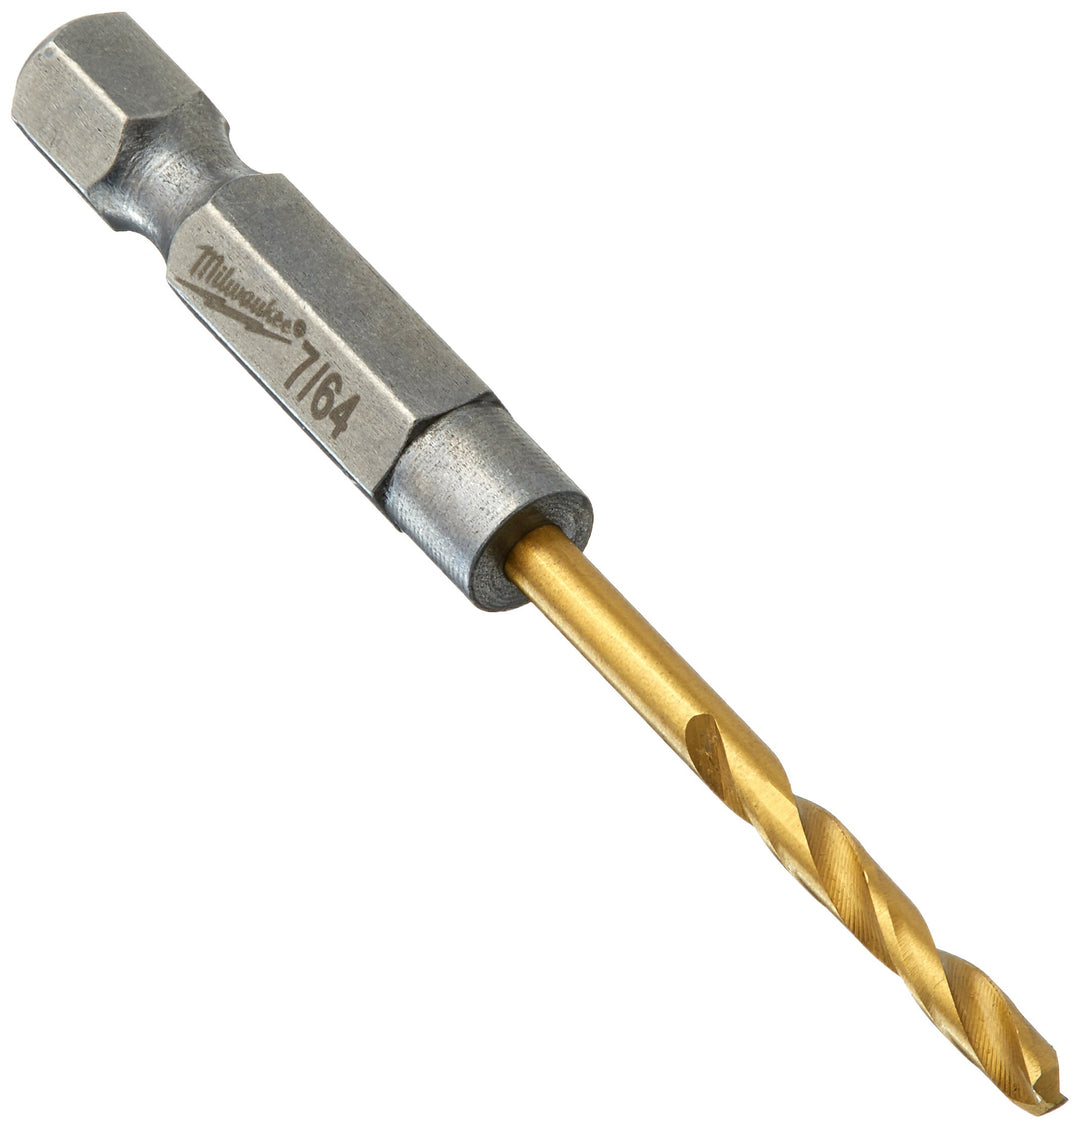 Milwaukee 48-89-4604 Electric Tool Twist Impact Drill Bit, 7/64" Diameter x 2.52" L, 29/32", 1/4" Hex Shank, 135 Degree Split Po" t